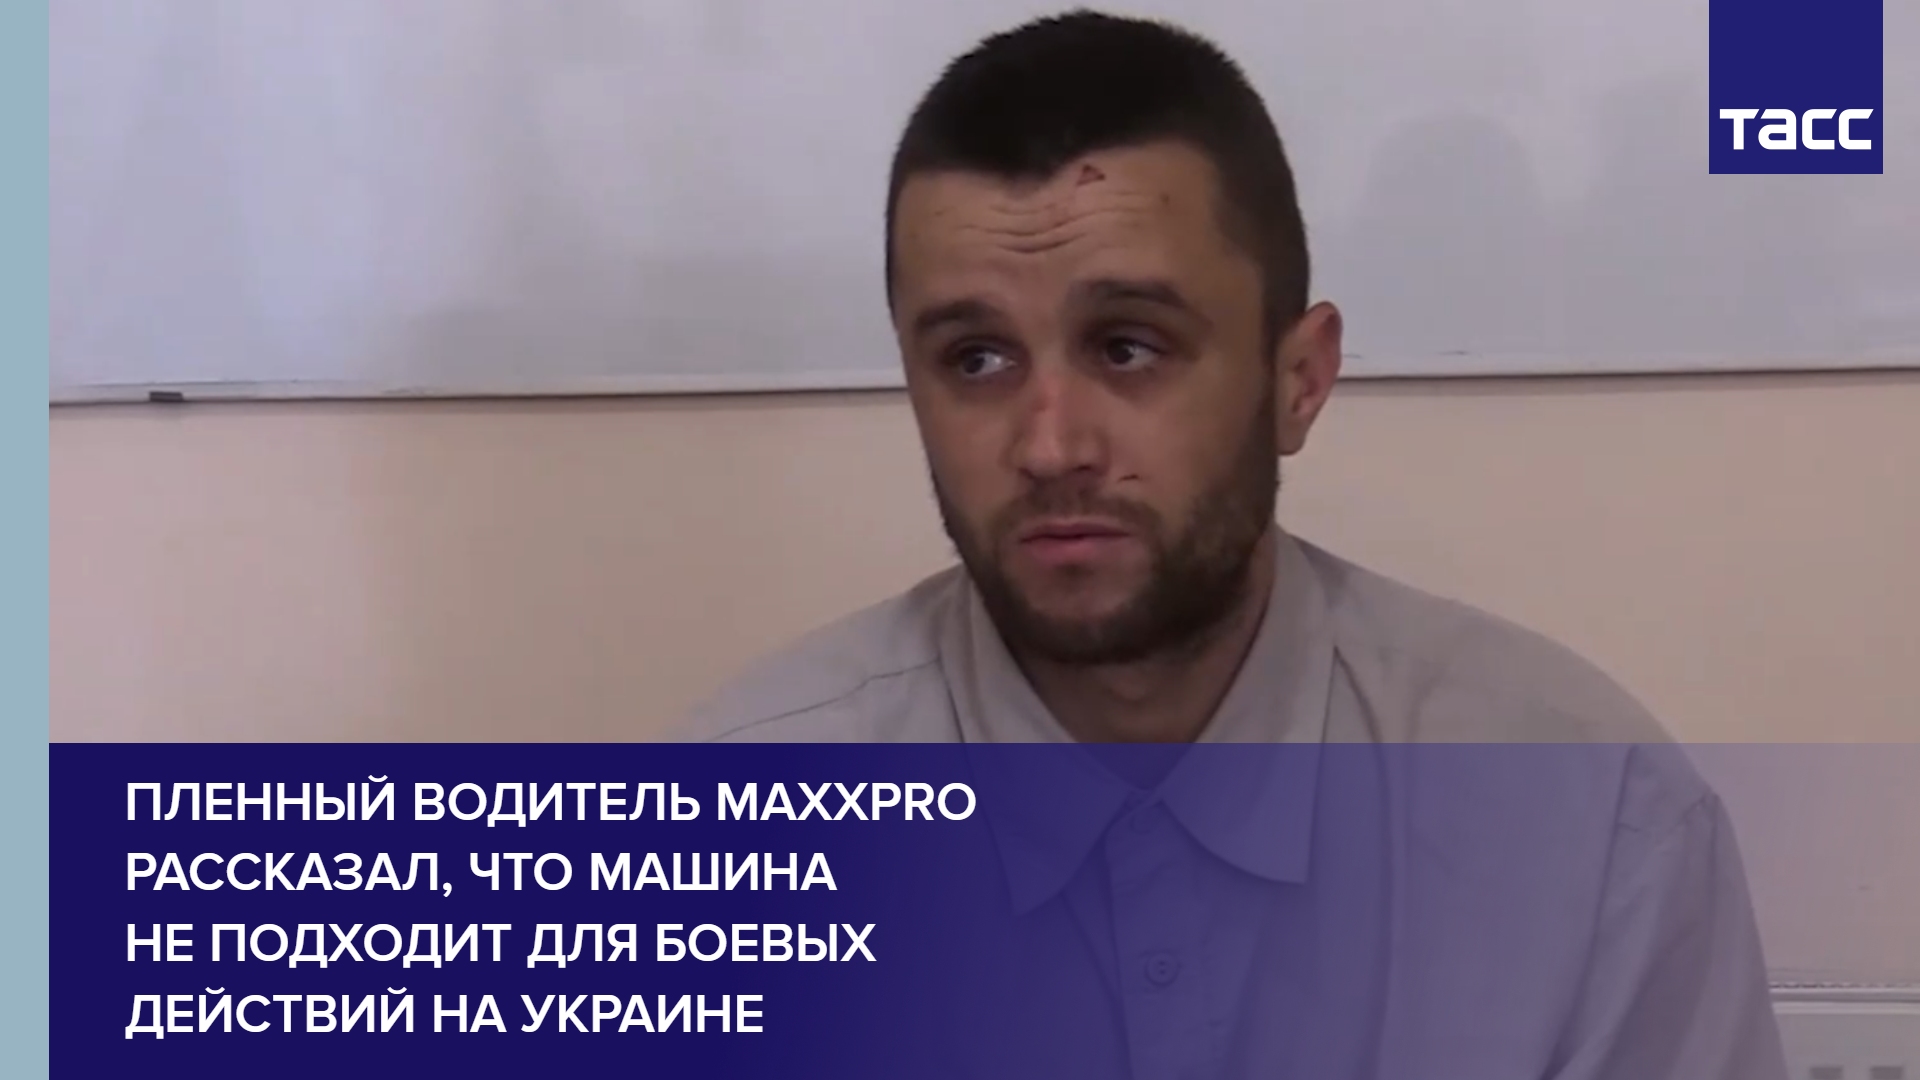 Пленный водитель MaxxPro рассказал, что машина не подходит для боевых действий на Украине